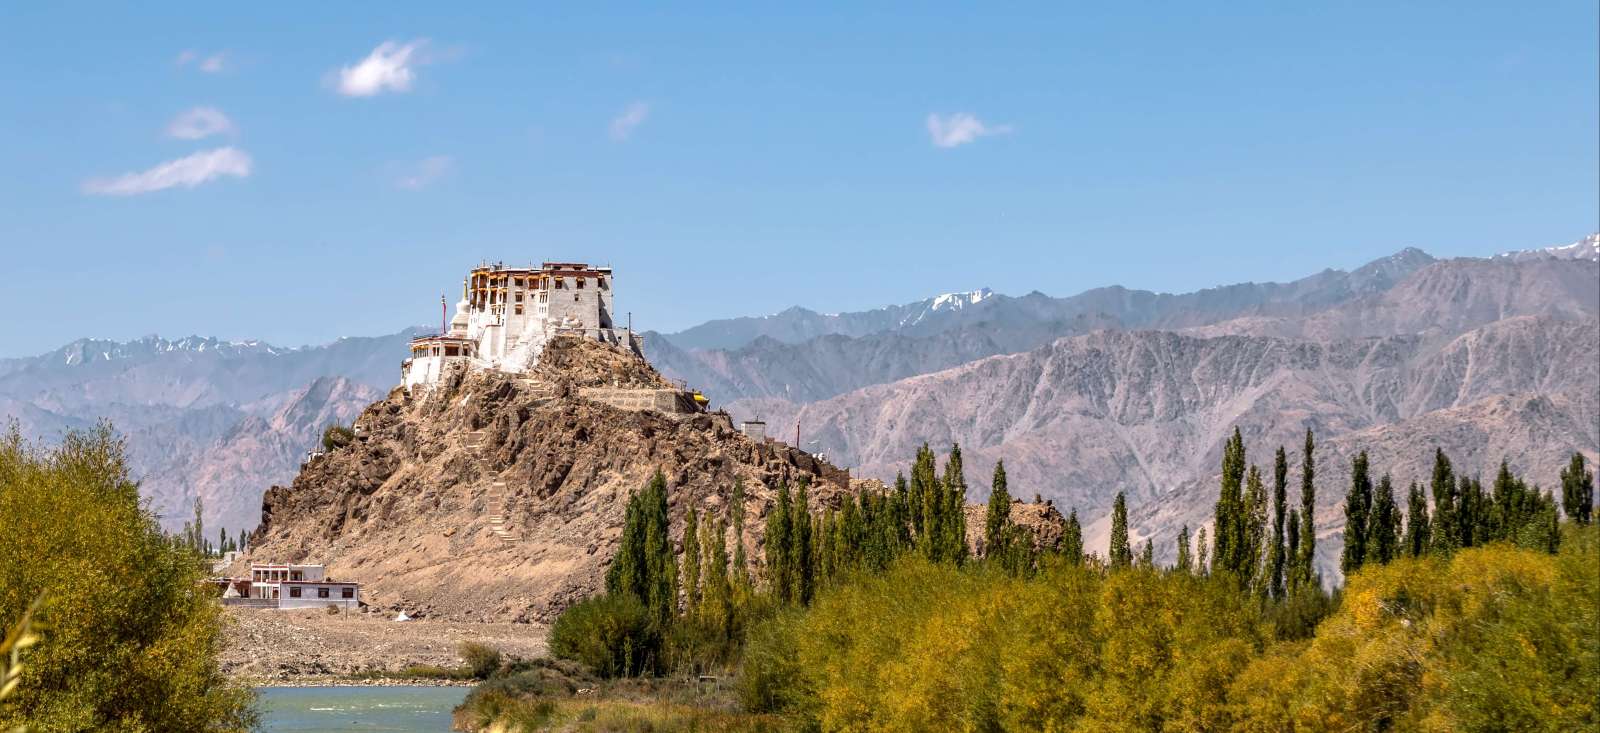 Voyage roadtrip - Le Ladakh en douceur